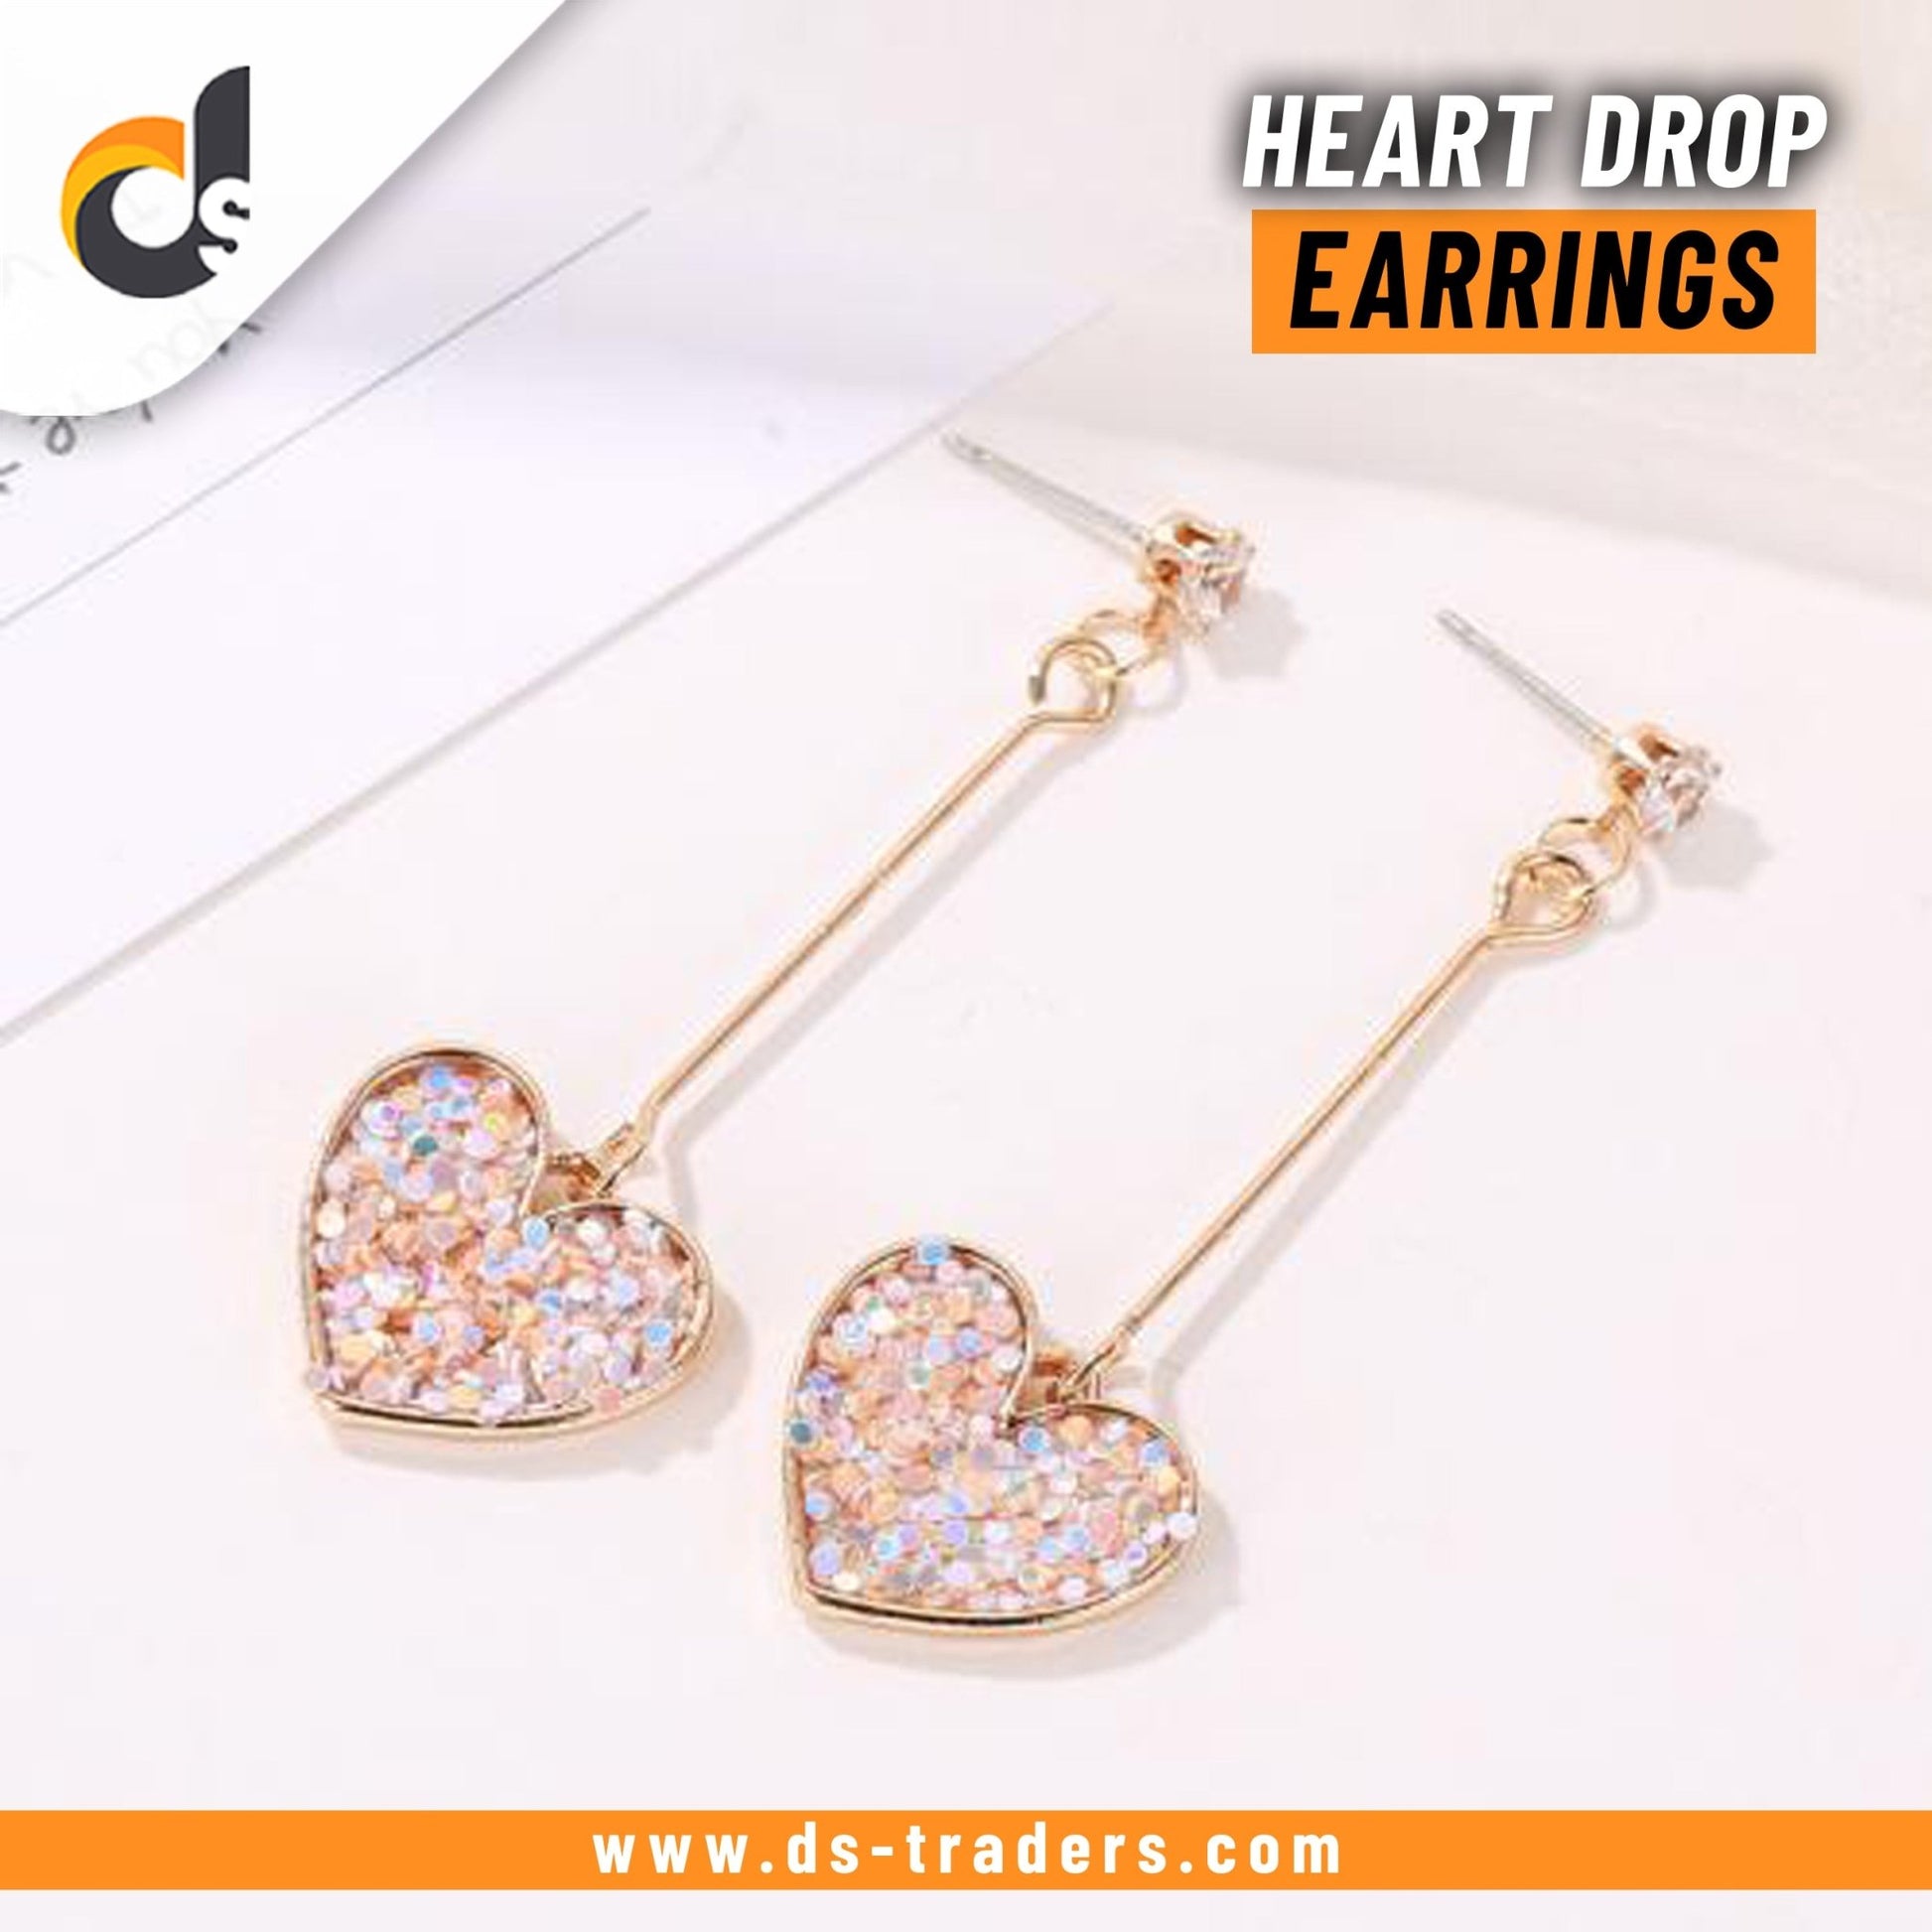 Heart Drop Earrings - DS Traders